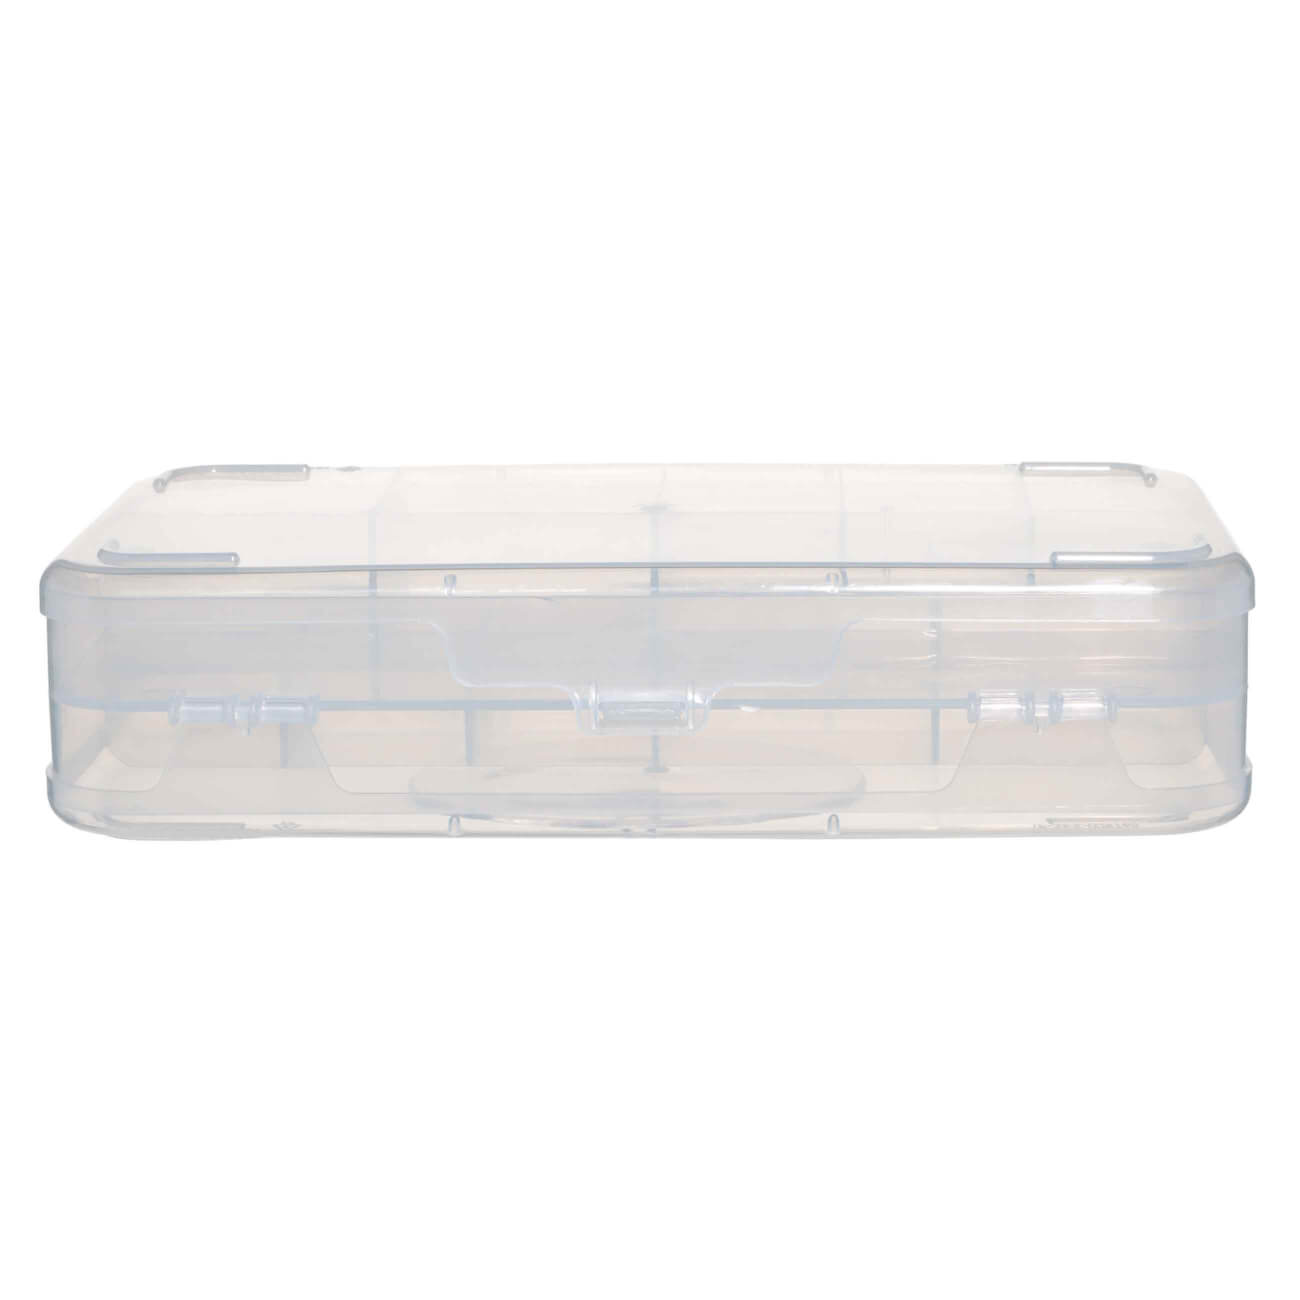 Контейнер-органайзер для хранения, 21х13 см, 2 уровня, пластик, Compact контейнер для хранения и переноски яиц